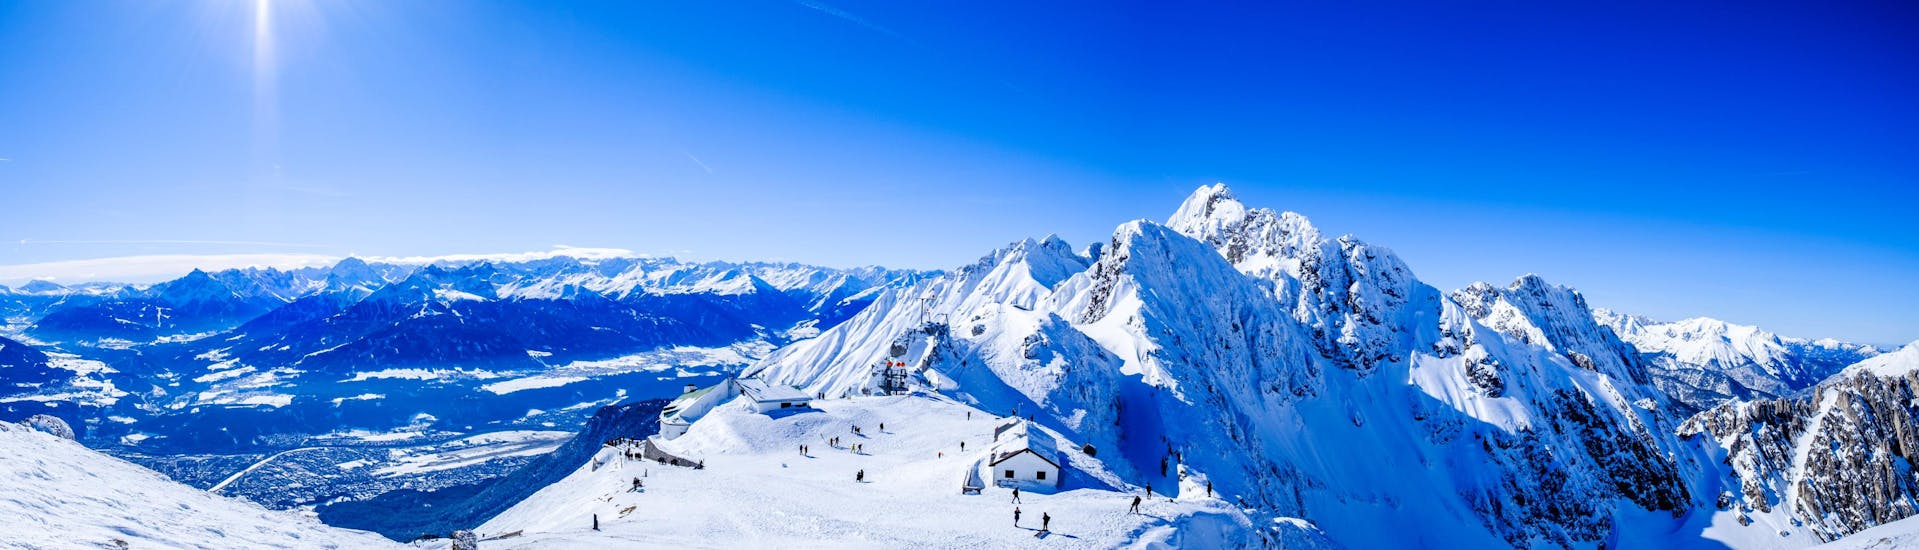 Ausblick auf die sonnige Berglandschaft beim Skifahren lernen mit den Skischulen auf der Nordkette.